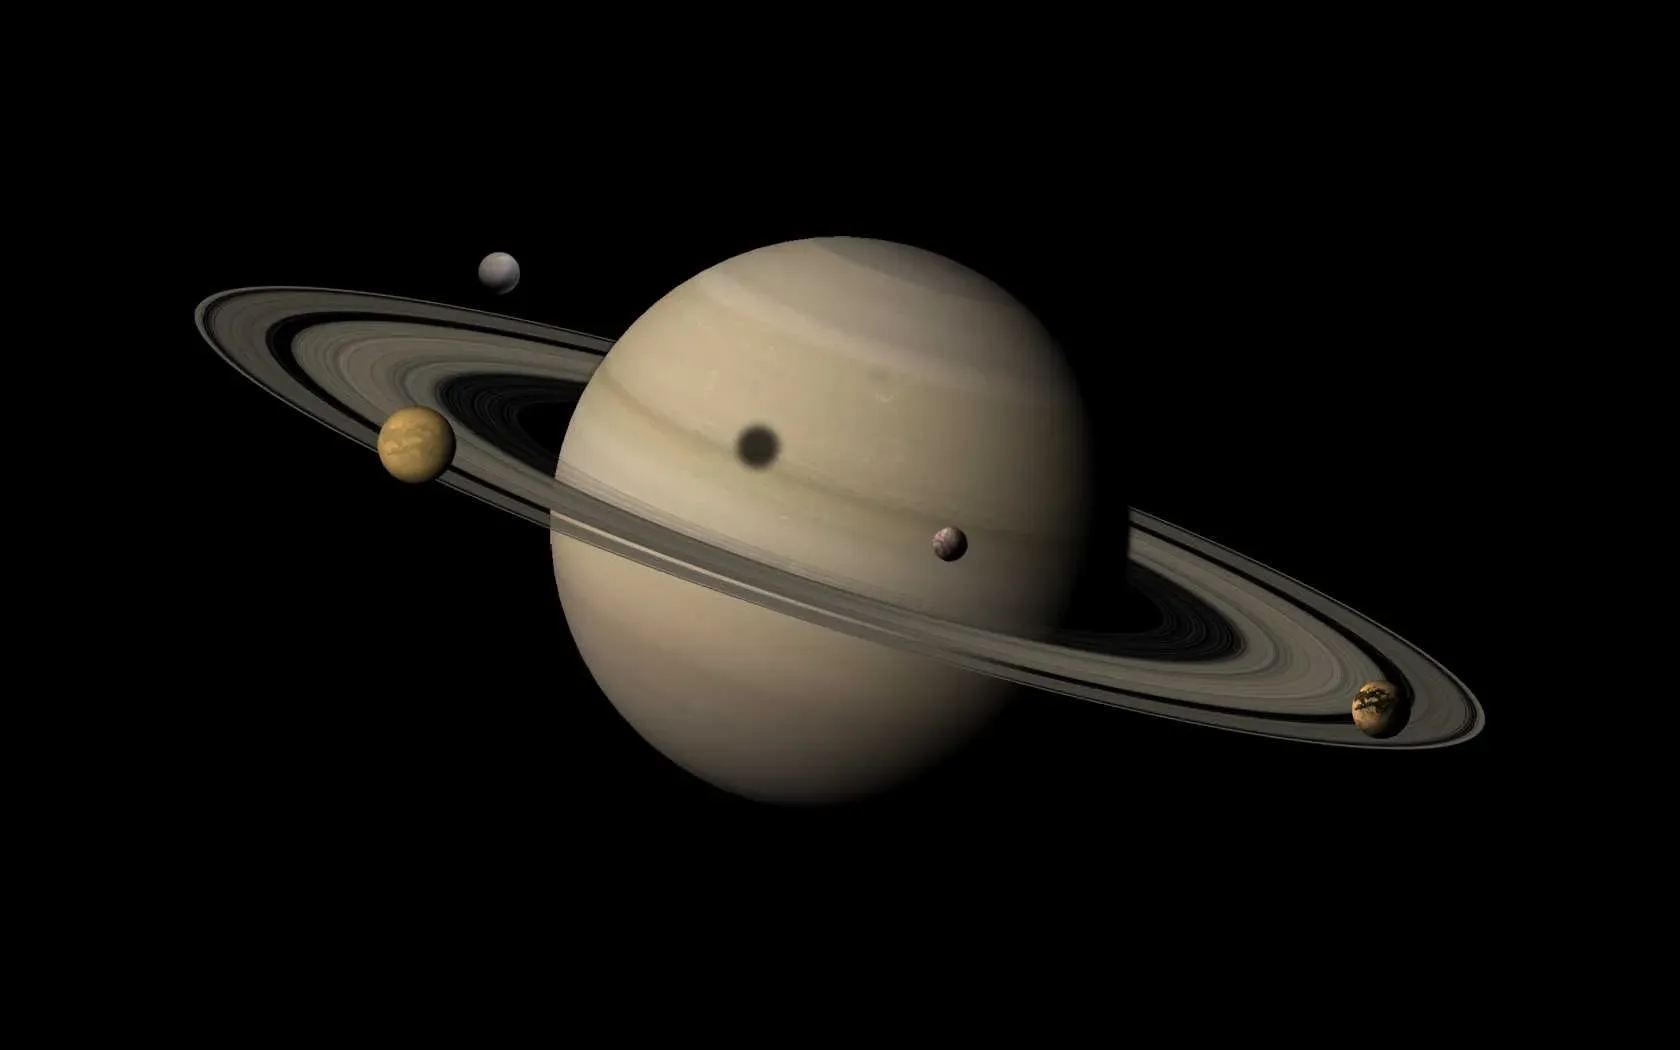 
											
											Saturnning 28 ta yangi tabiiy yo‘ldoshi topildi
											
											